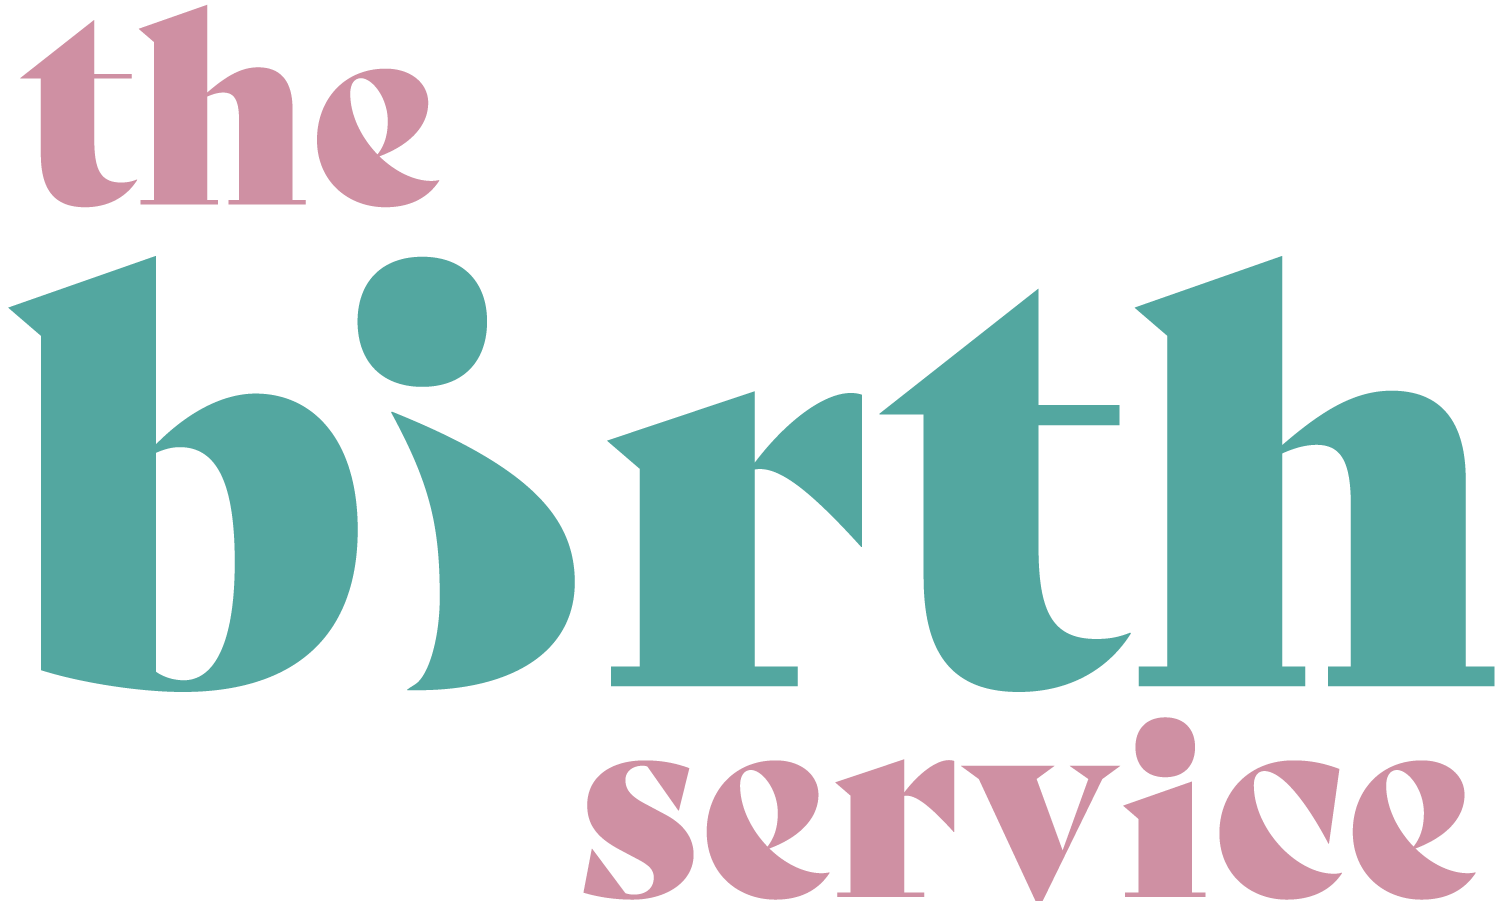 The Birth Service